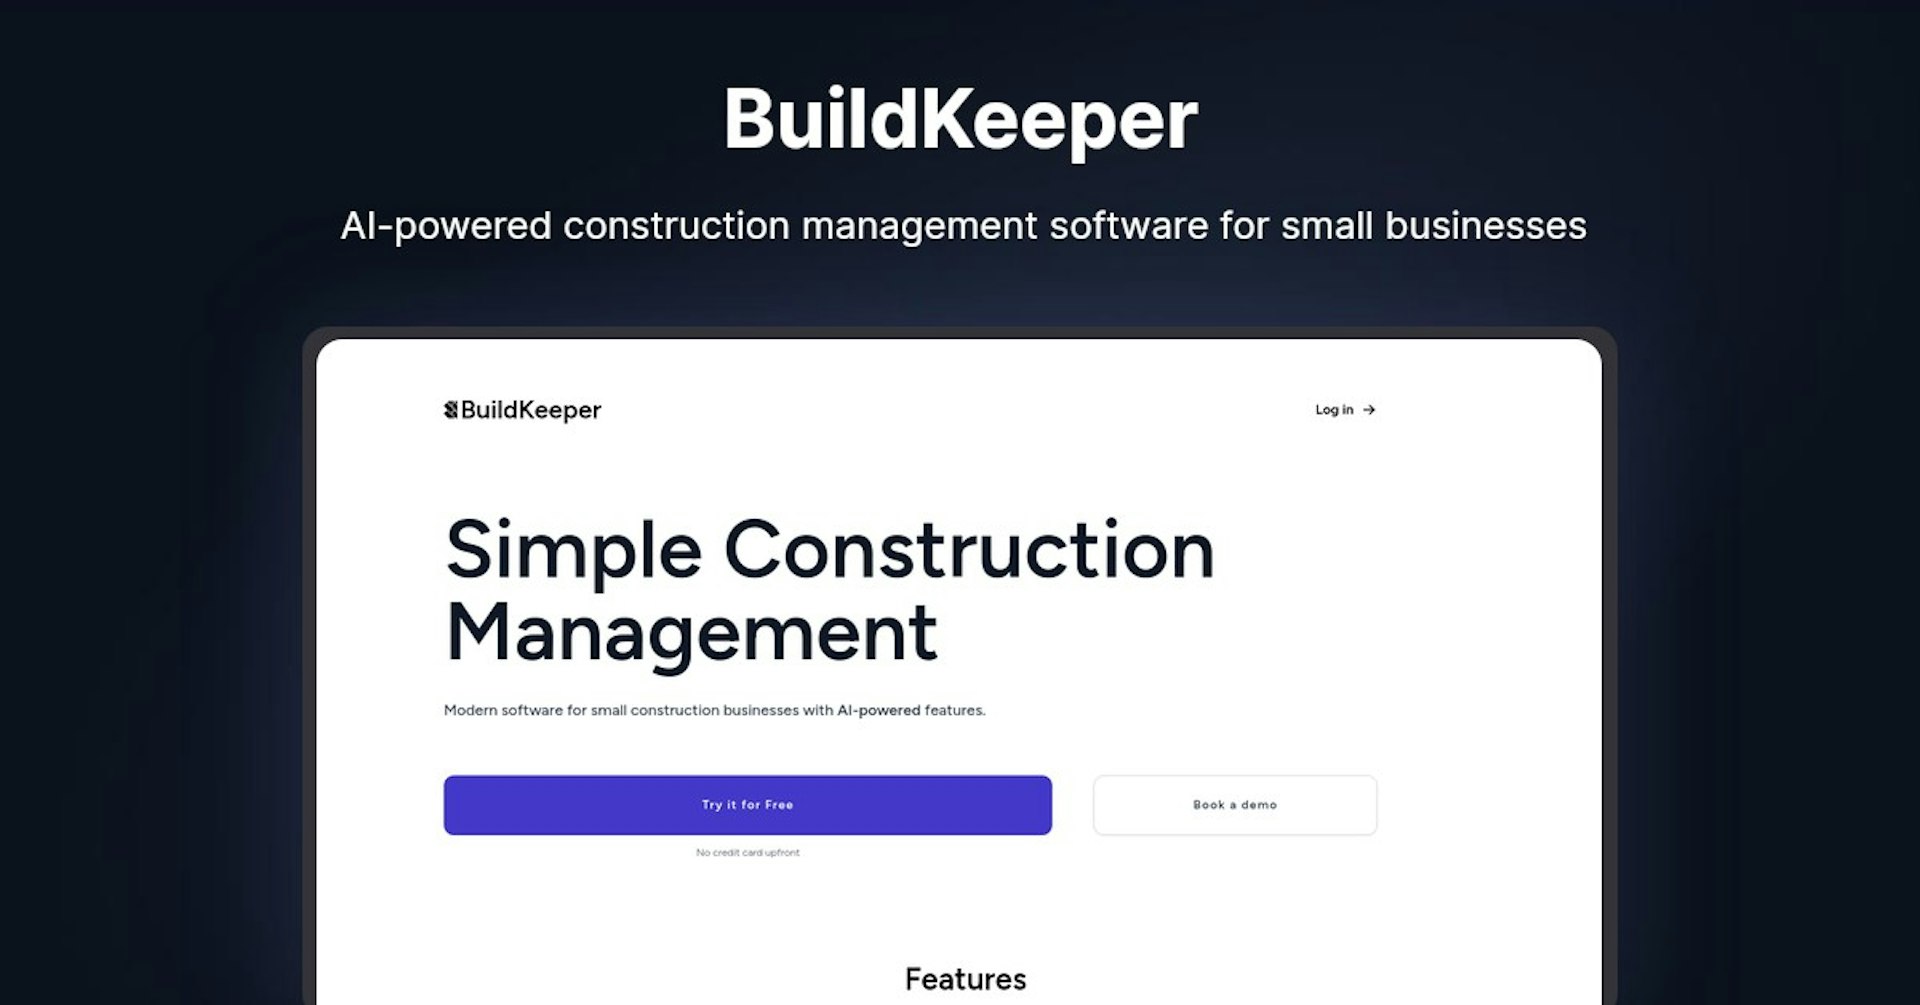 BuildKeeper